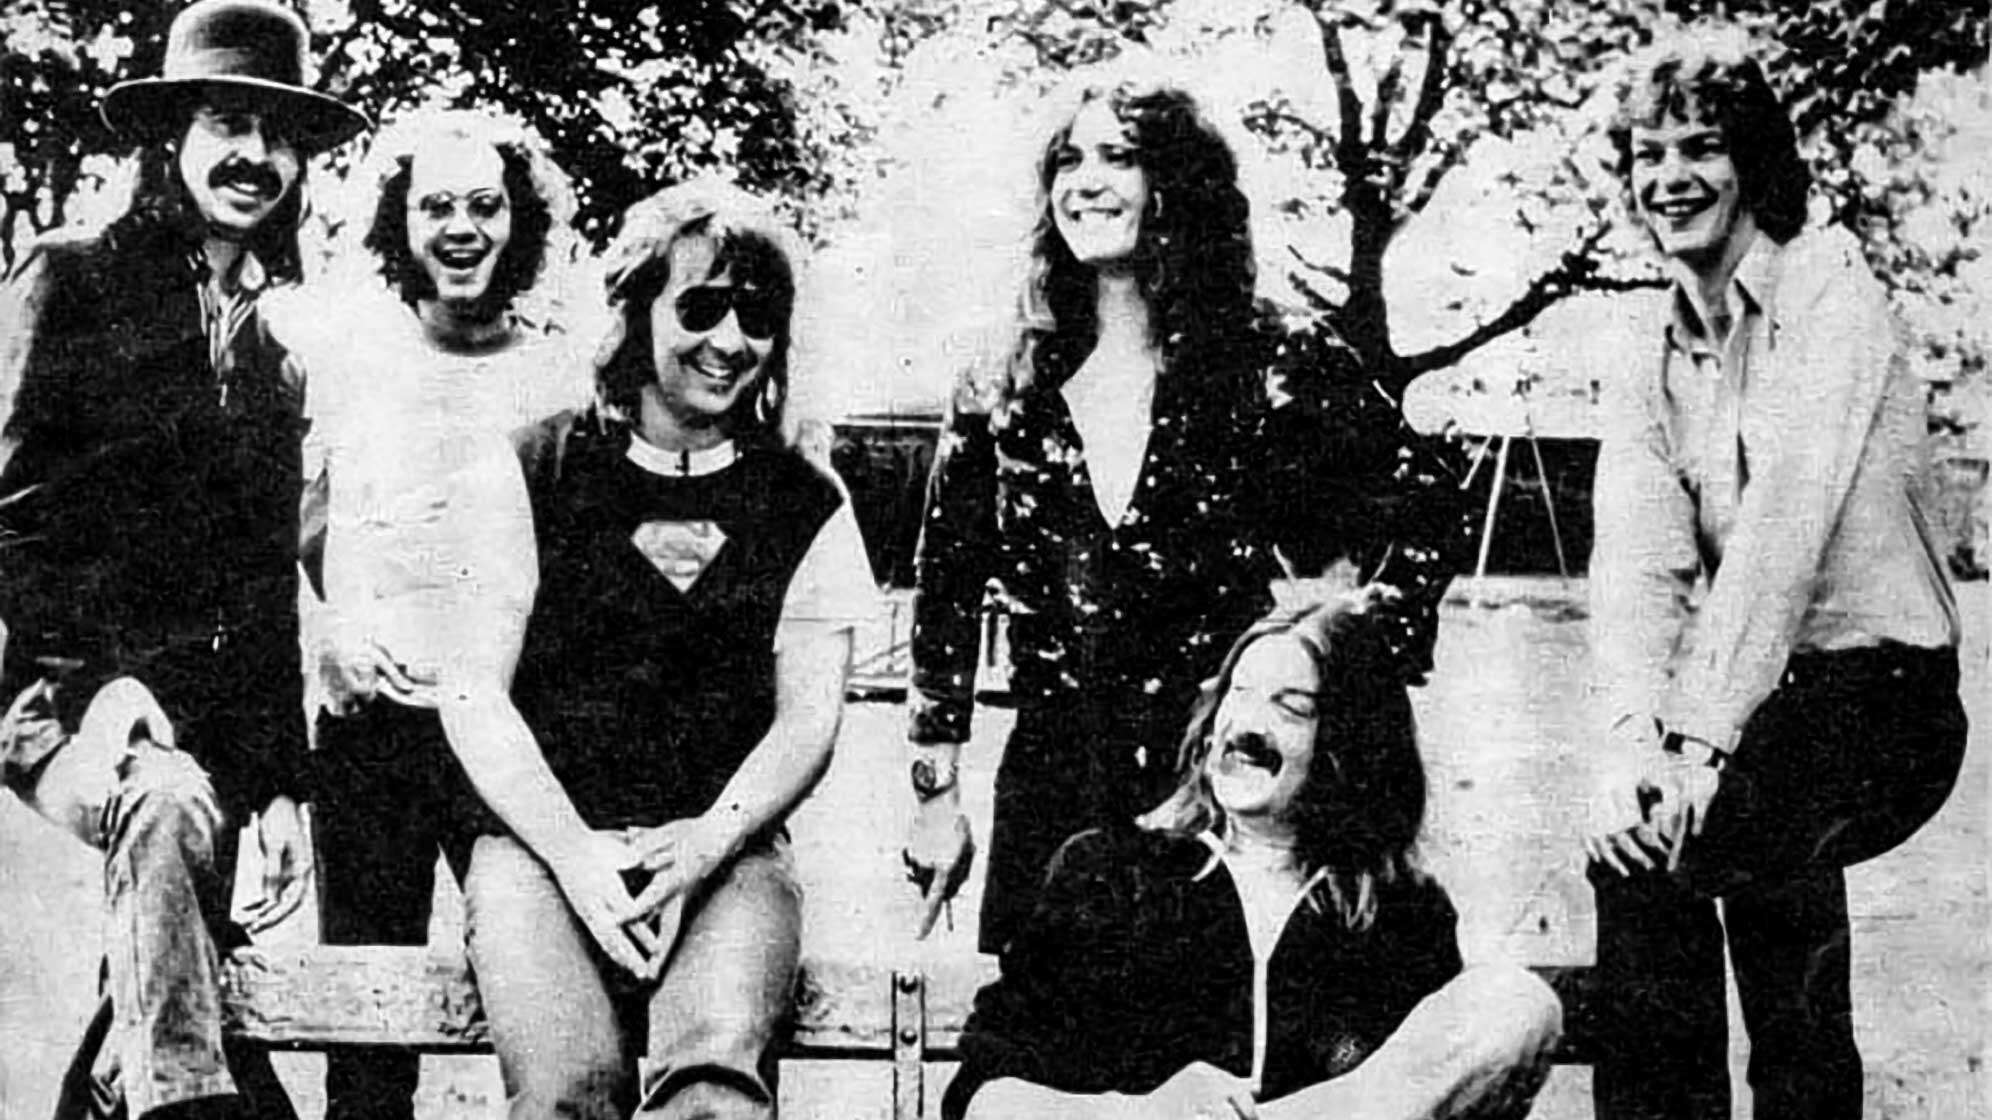 Das Line-Up von Whitesnake im Jahr 1981. Von links nach rechts: Micky Moody, Ian Paice, Bernie Marsden, David Coverdale, Jon Lord und Neil Murray.